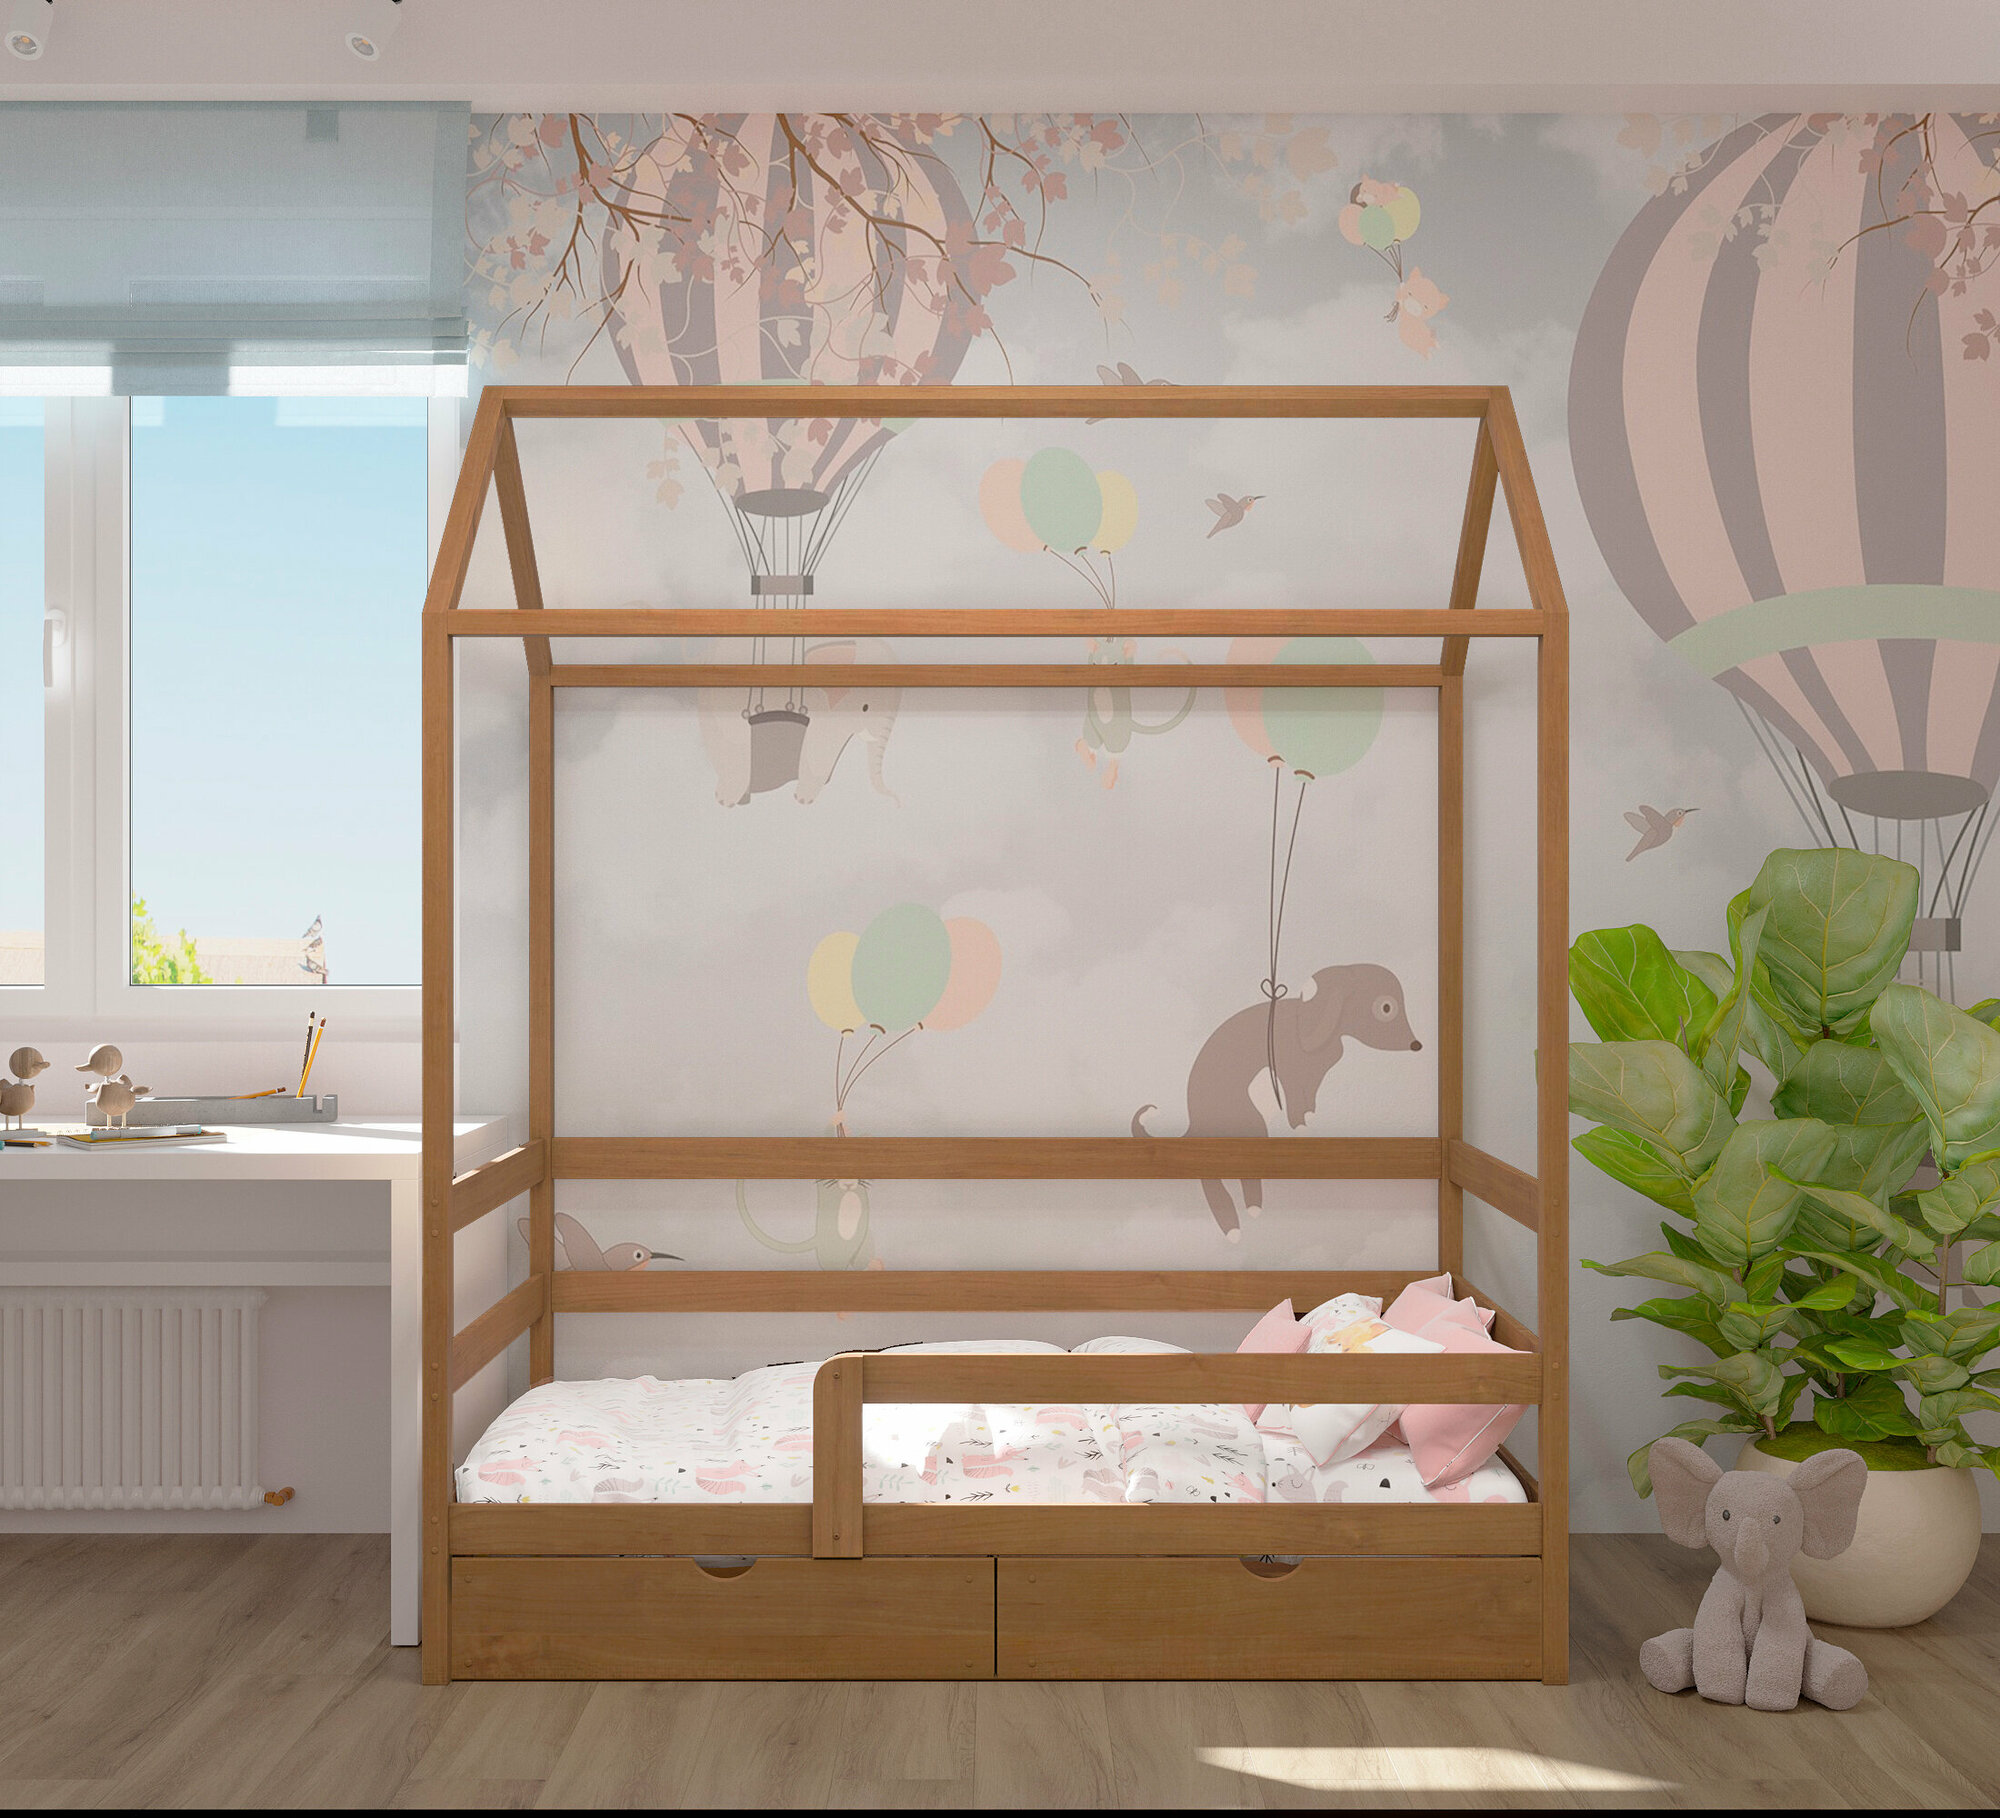 Кровать детская, подростковая "Классика", спальное место 180х90, в комплекте с выкатными ящиками и ортопедическим матрасом, масло "Орех", из массива